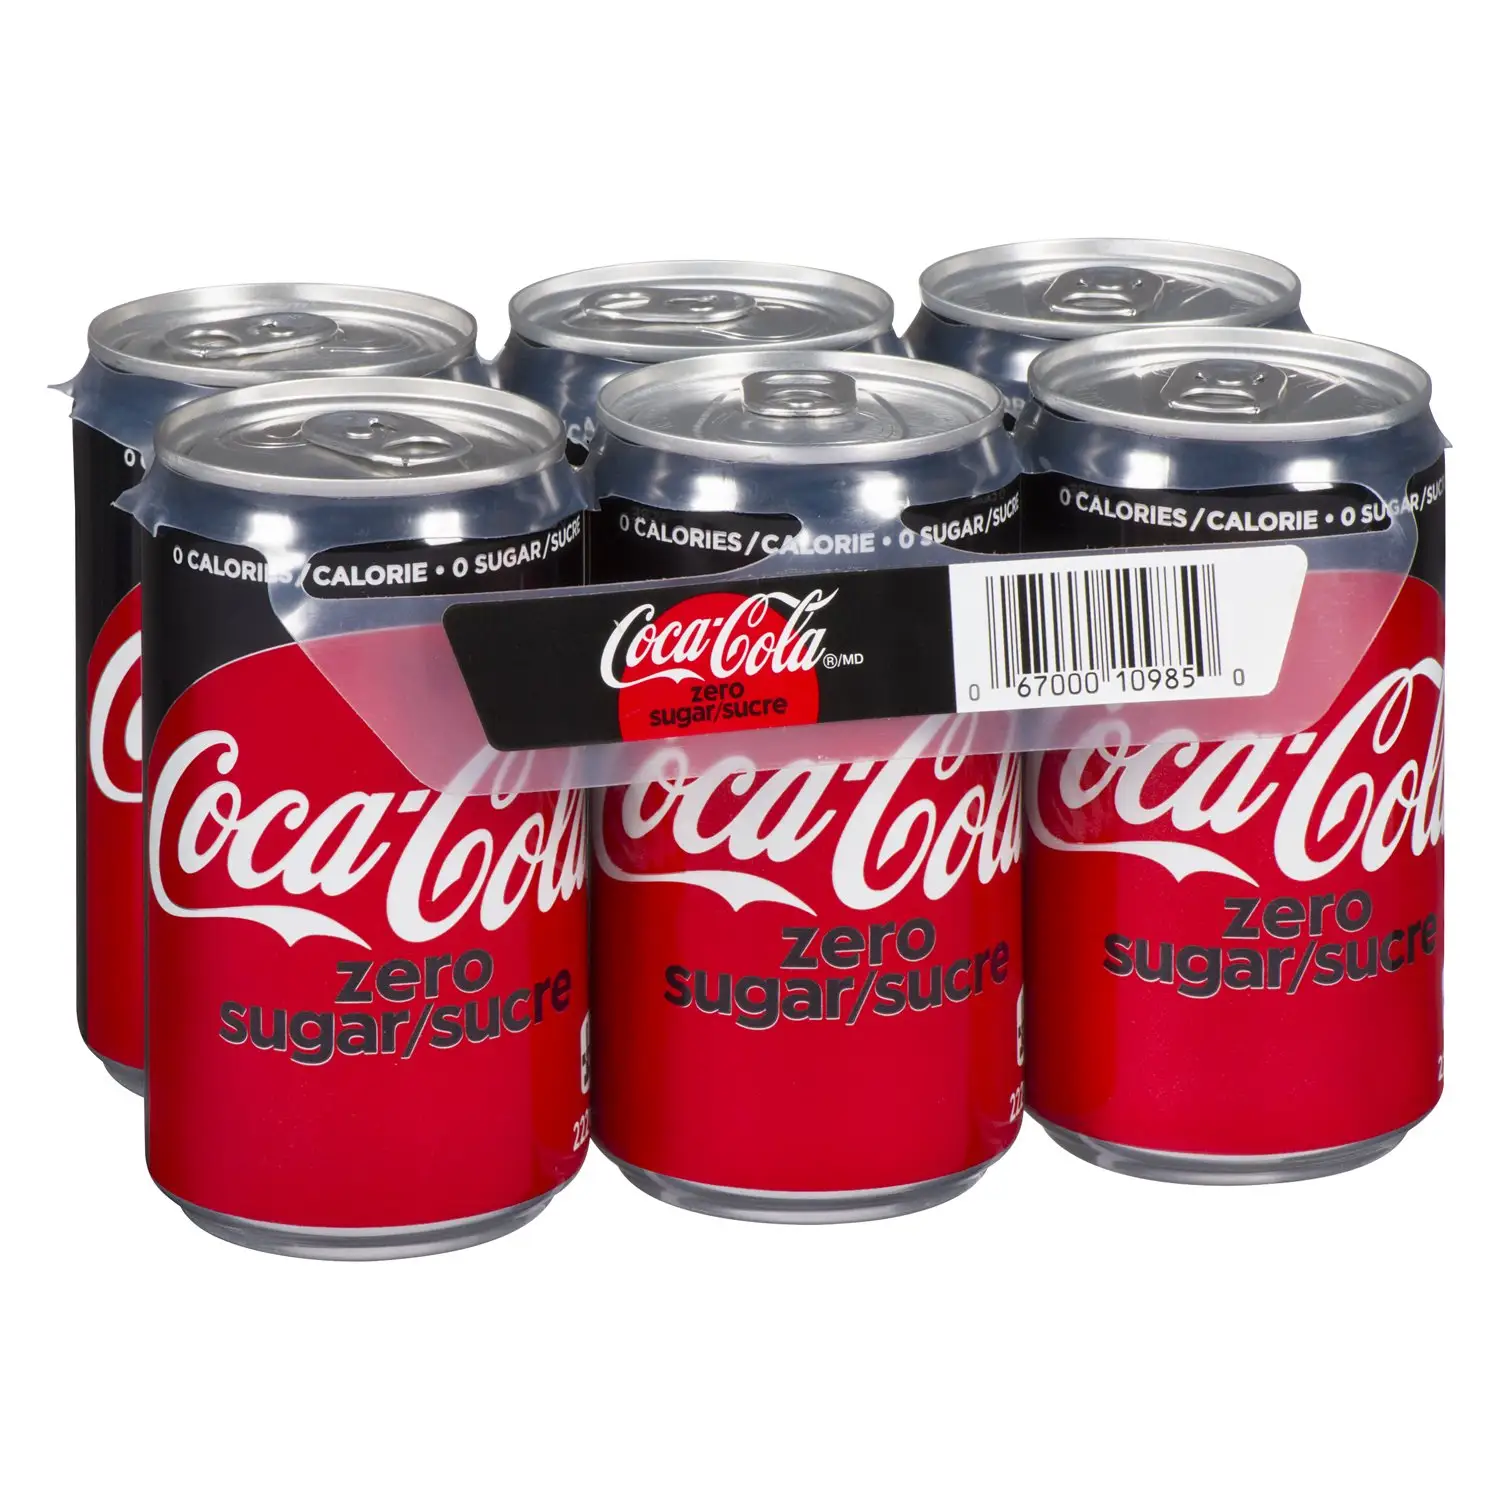 Großhandel Coca-Cola 330ML erfrischungsgetränke Großhandel Dosen Cola getränke exotische getränke Soda kohlensäurehaltige Getränke